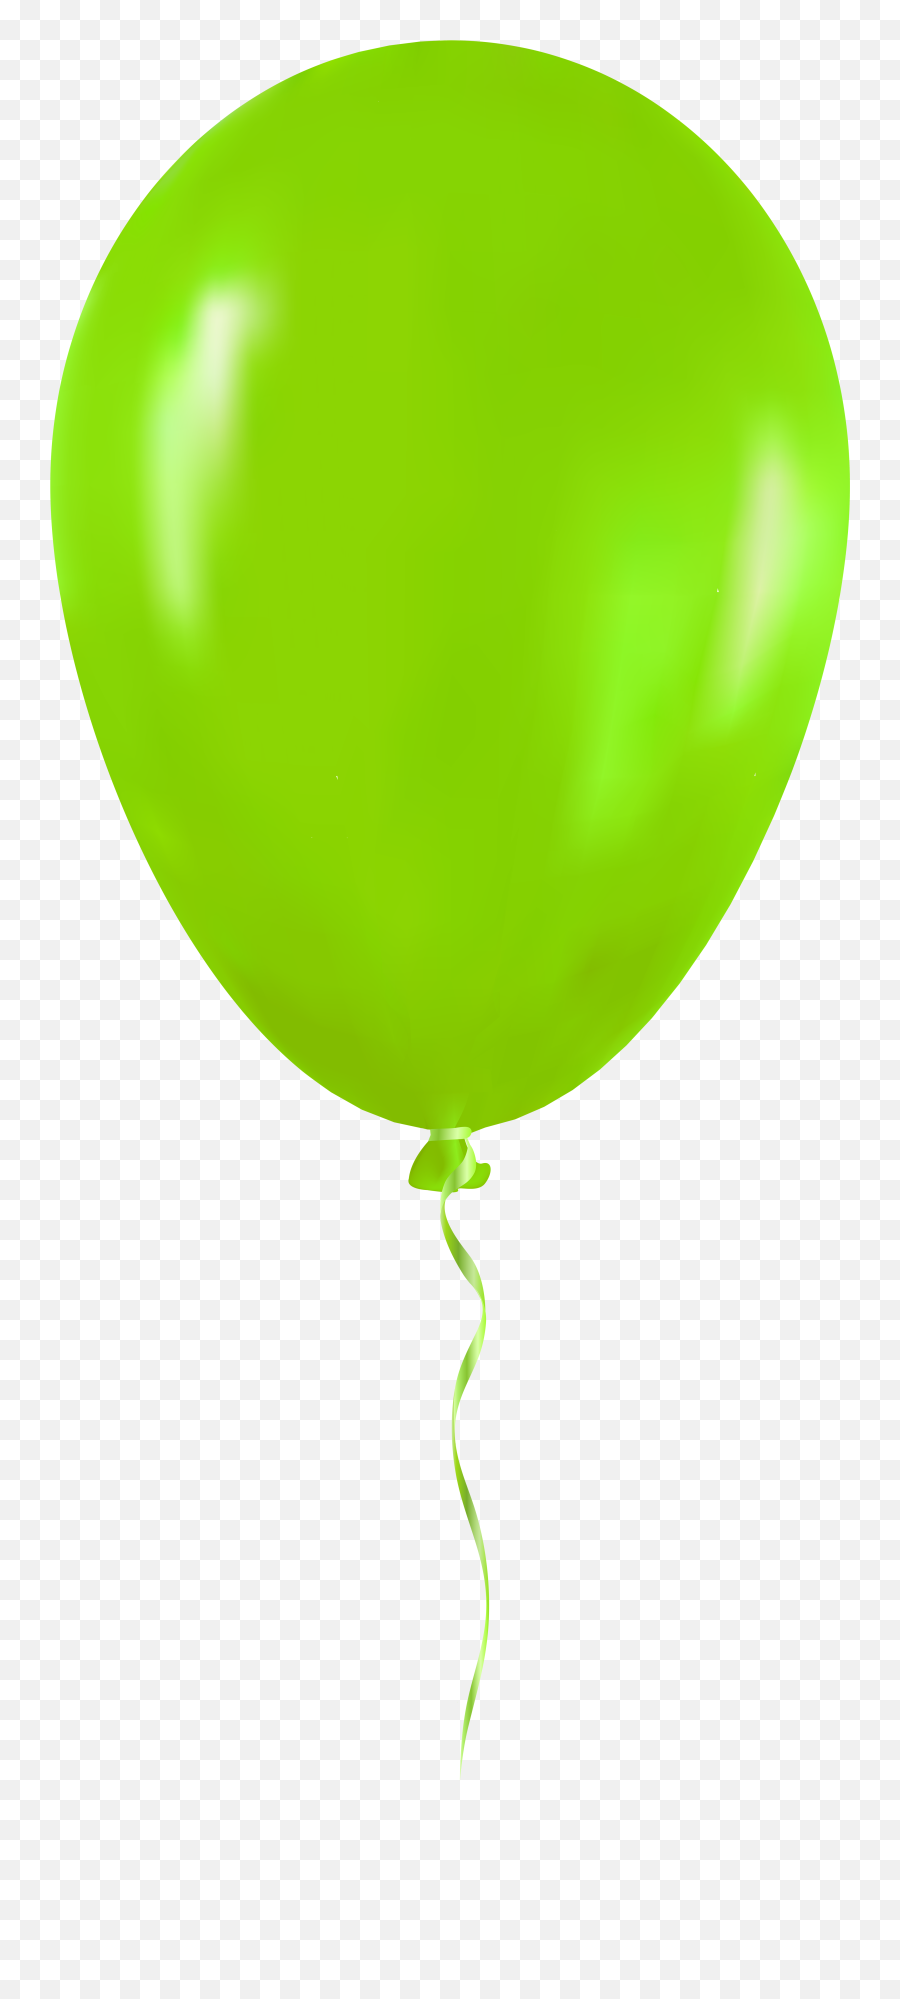 Faces Clipart Balloon Faces Balloon - Green Balloon Clipart Png Emoji,Emojis Balloons